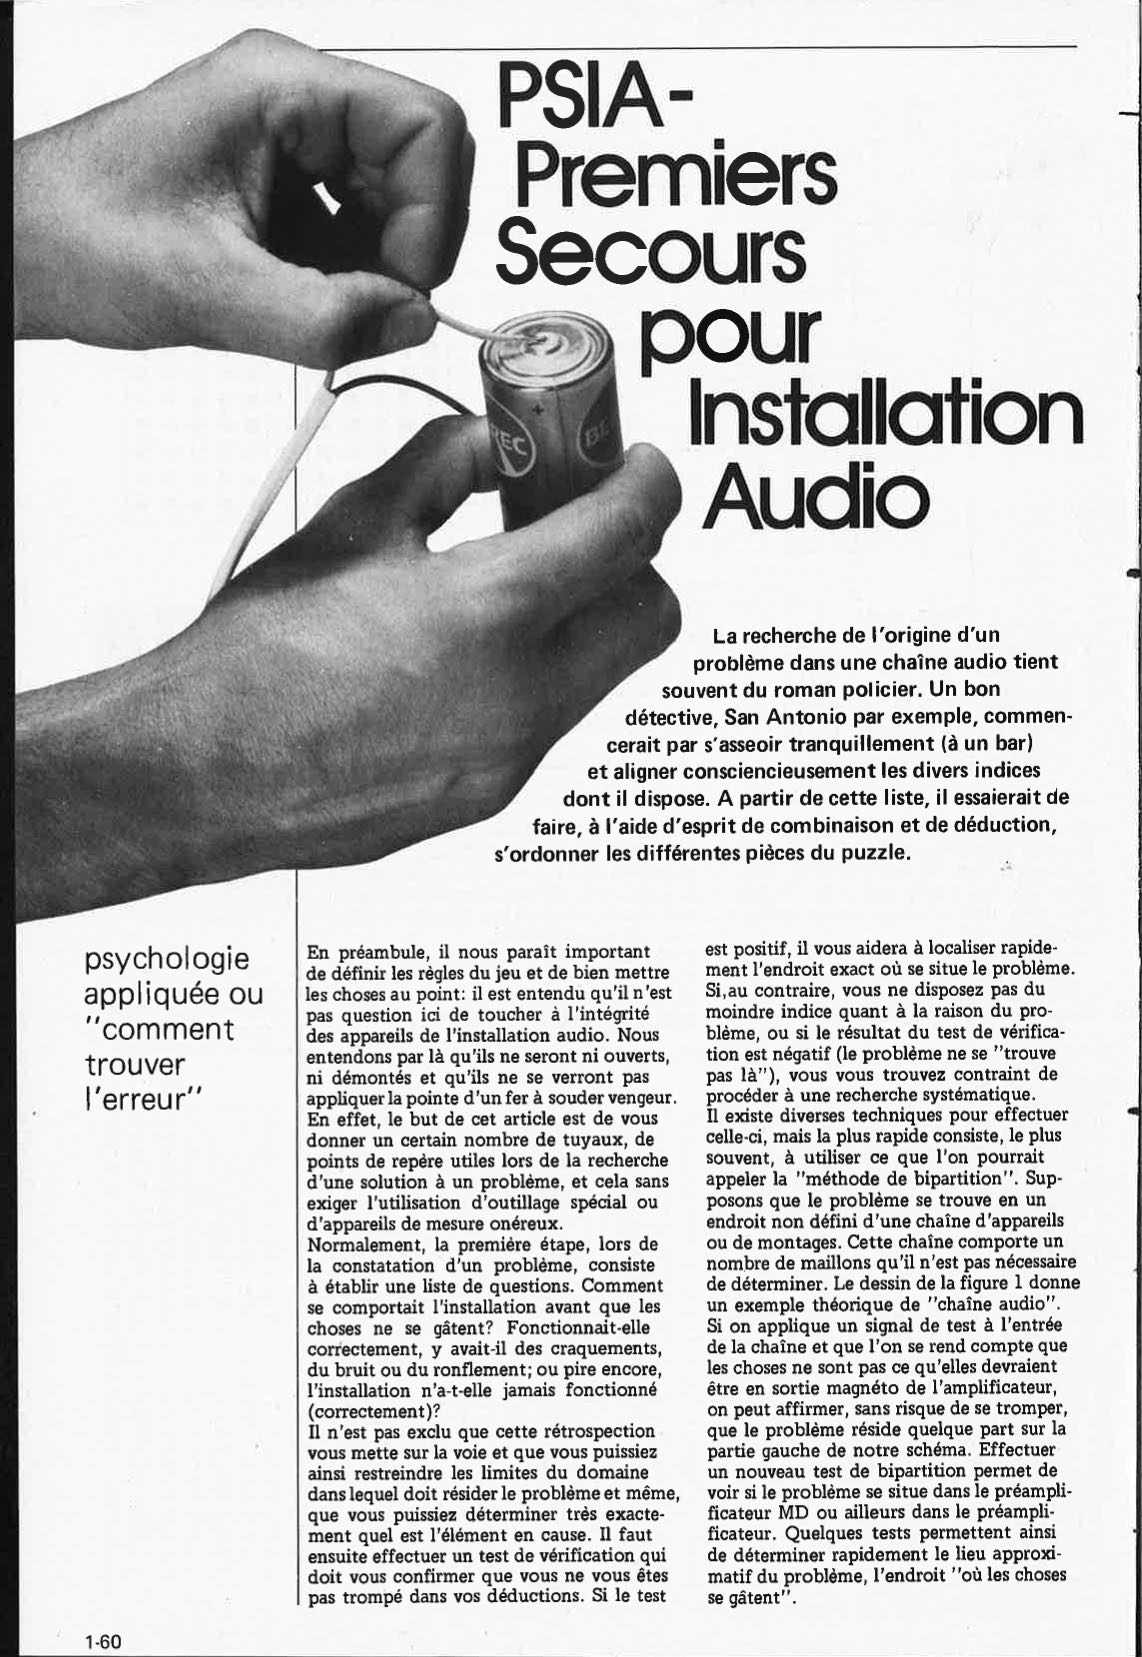 PSIA-Premiers secours pour installation Audio